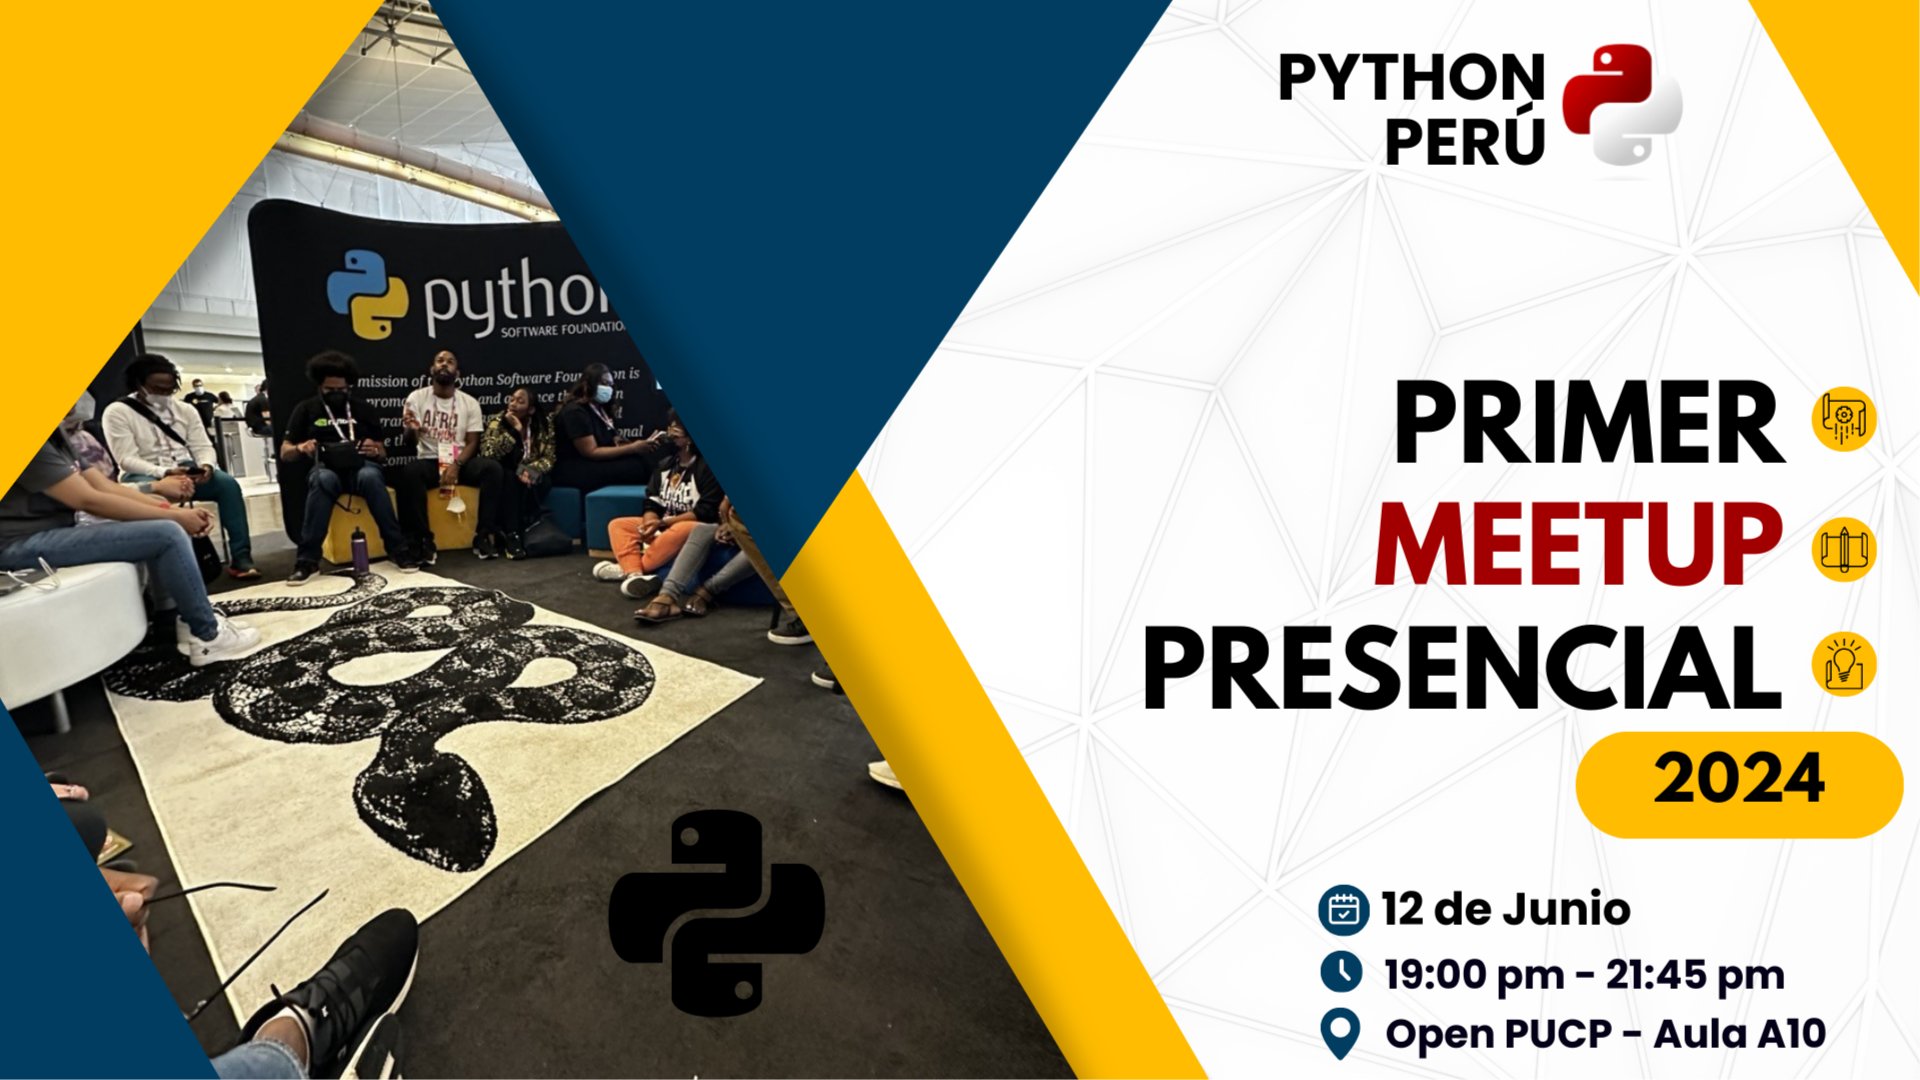 Imagen del Meetup de Python Perú